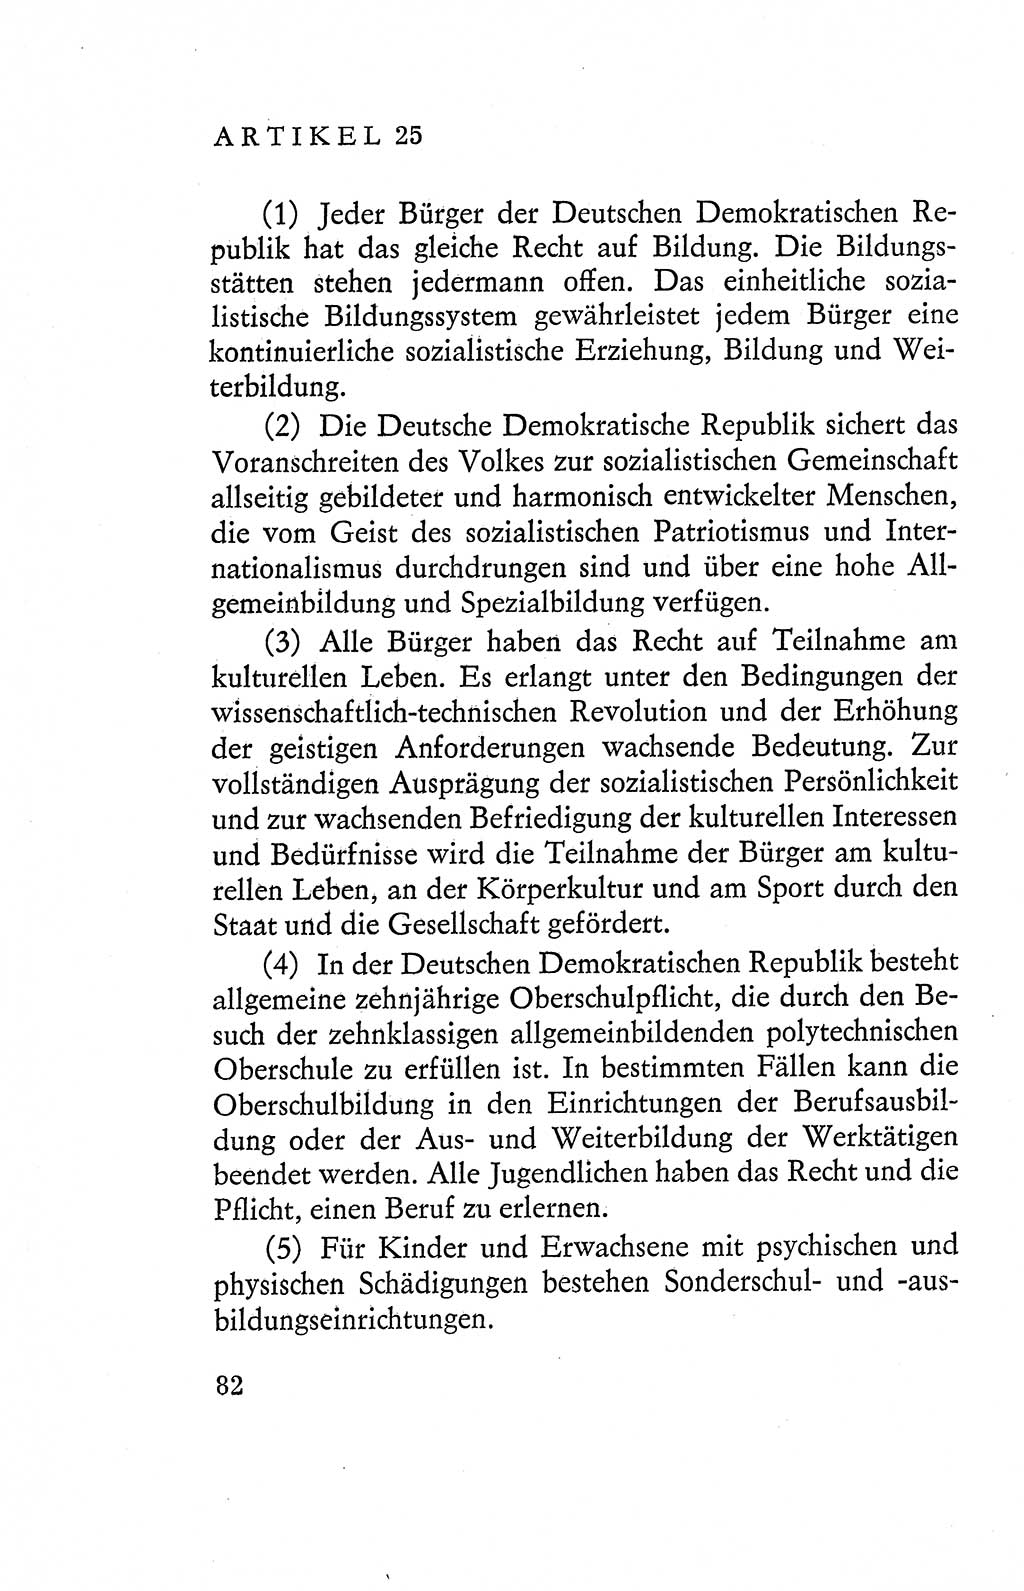 Verfassung der Deutschen Demokratischen Republik (DDR), Dokumente, Kommentar 1969, Band 2, Seite 82 (Verf. DDR Dok. Komm. 1969, Bd. 2, S. 82)